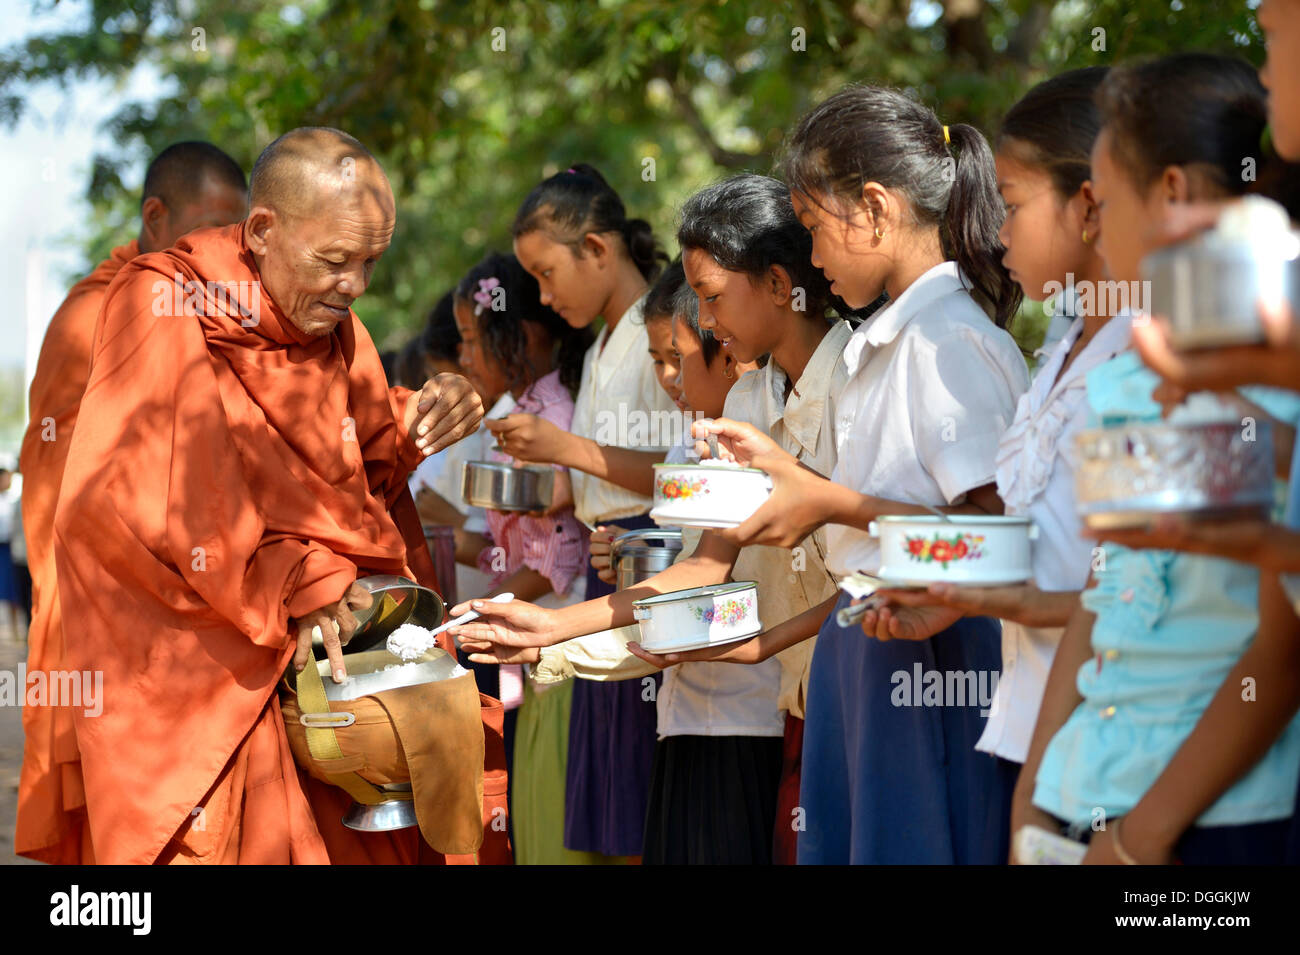 Les enfants donnant de la nourriture et de l'argent à un moine bouddhiste, cérémonie traditionnelle dans le cadre de la célébration du nouvel an cambodgien Banque D'Images